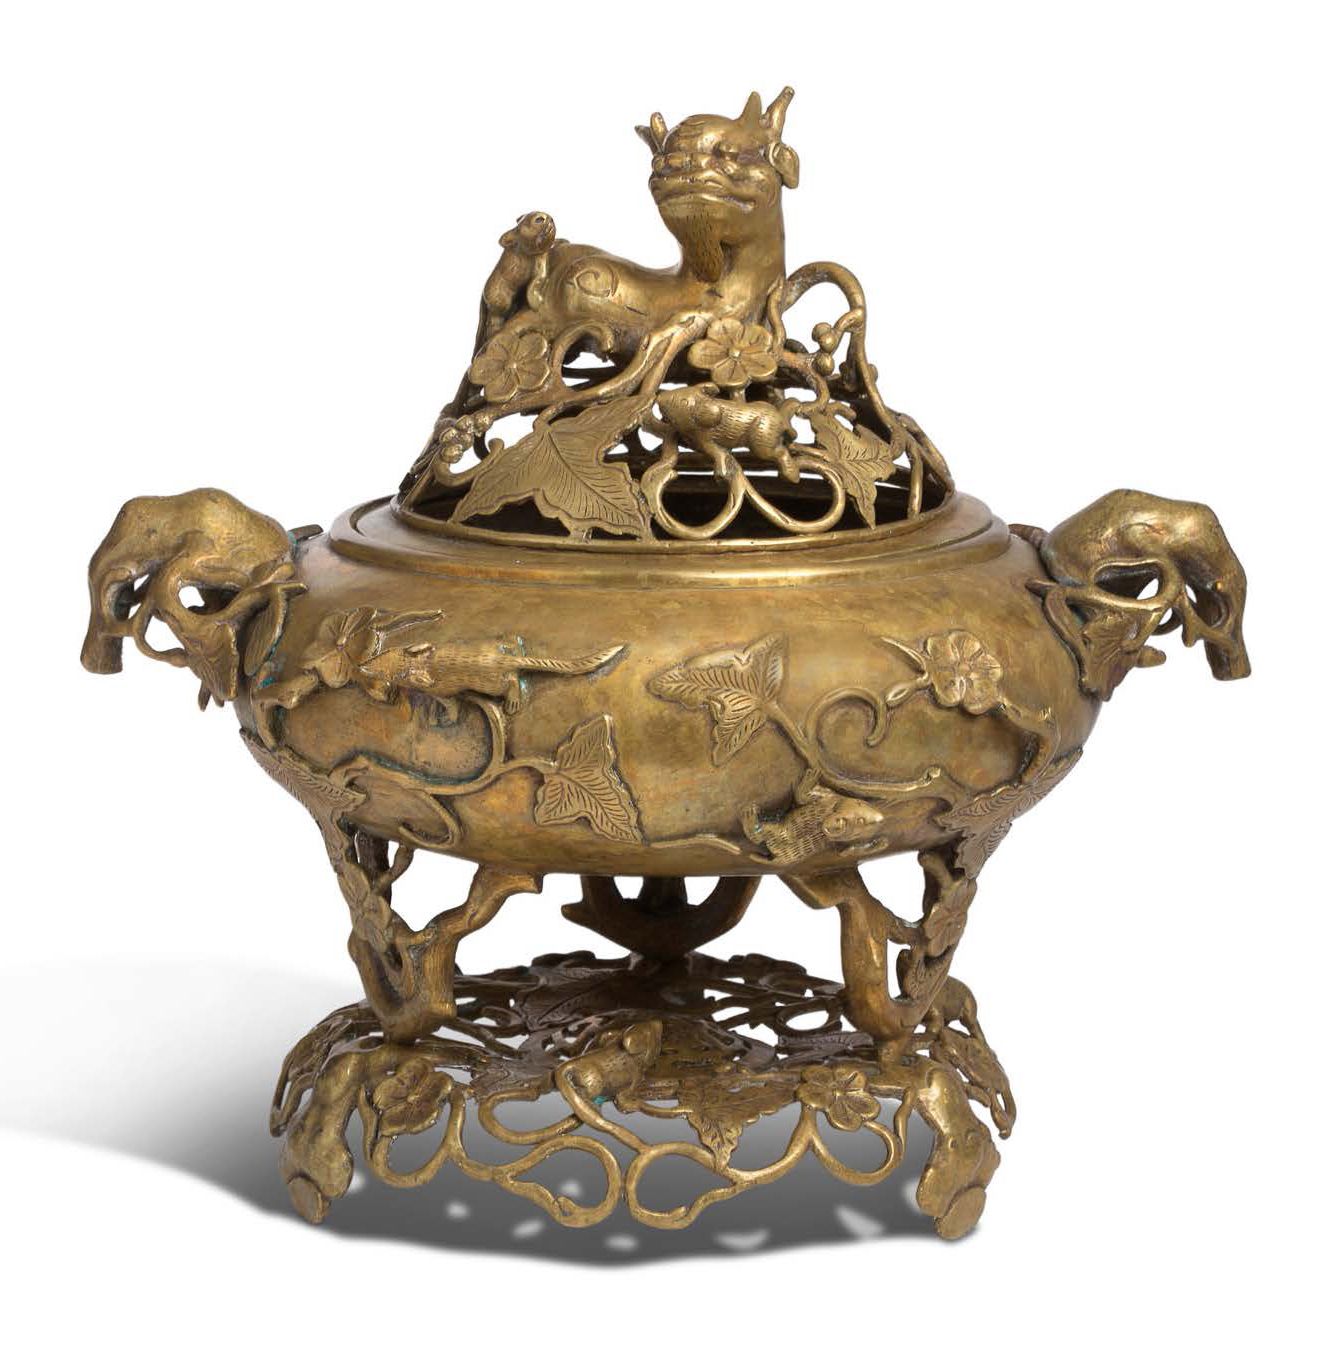 Vietnam vers 1900 
Incensario trípode revestido de bronce. El cuerpo hinchado es&hellip;